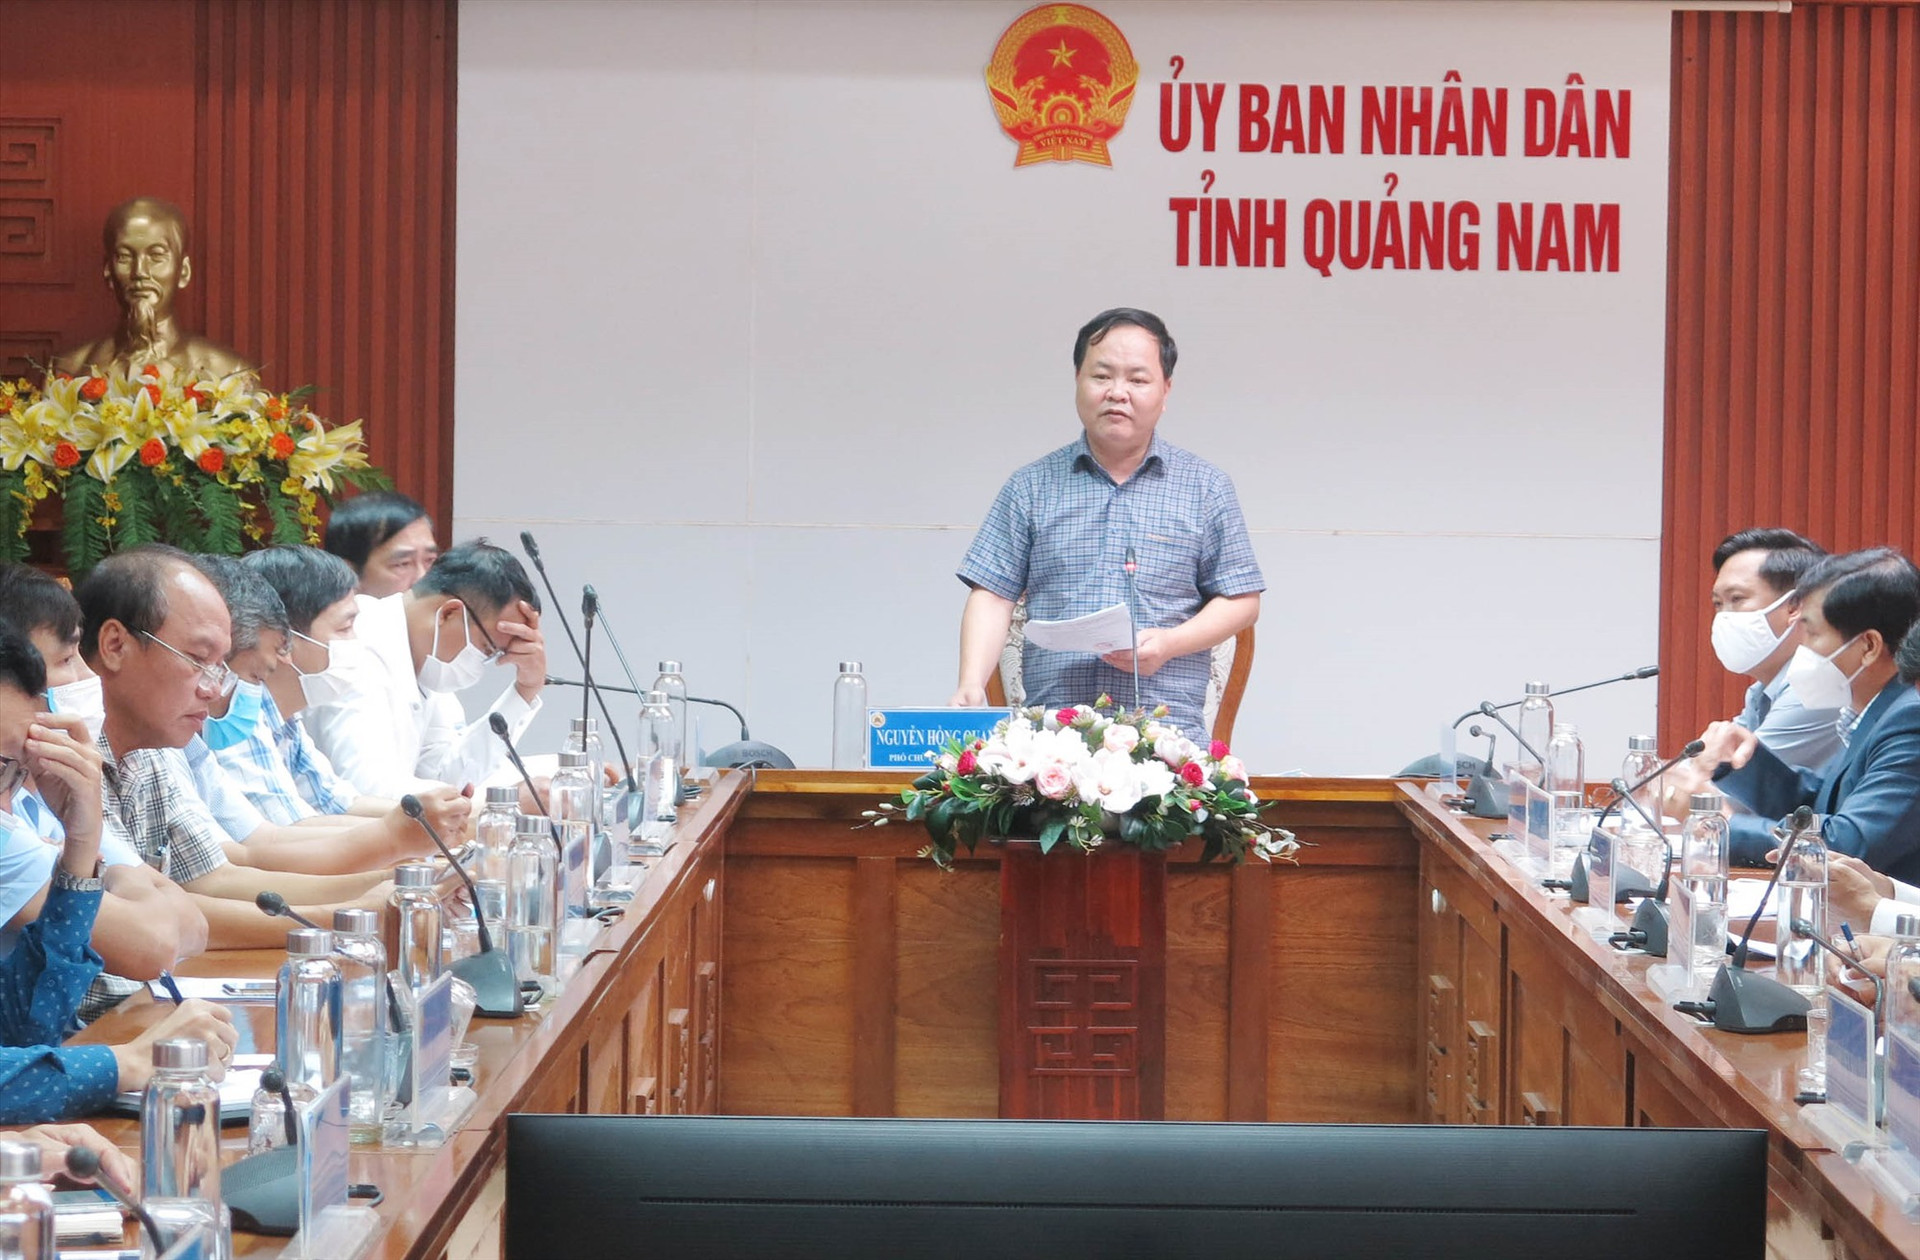 Phó Chủ tịch UBND tỉnh Nguyễn Hồng Quang chủ trì và các huyện, thị, thành phố phát biểu tại phiên họp thực hiện đấu thầu các dự án